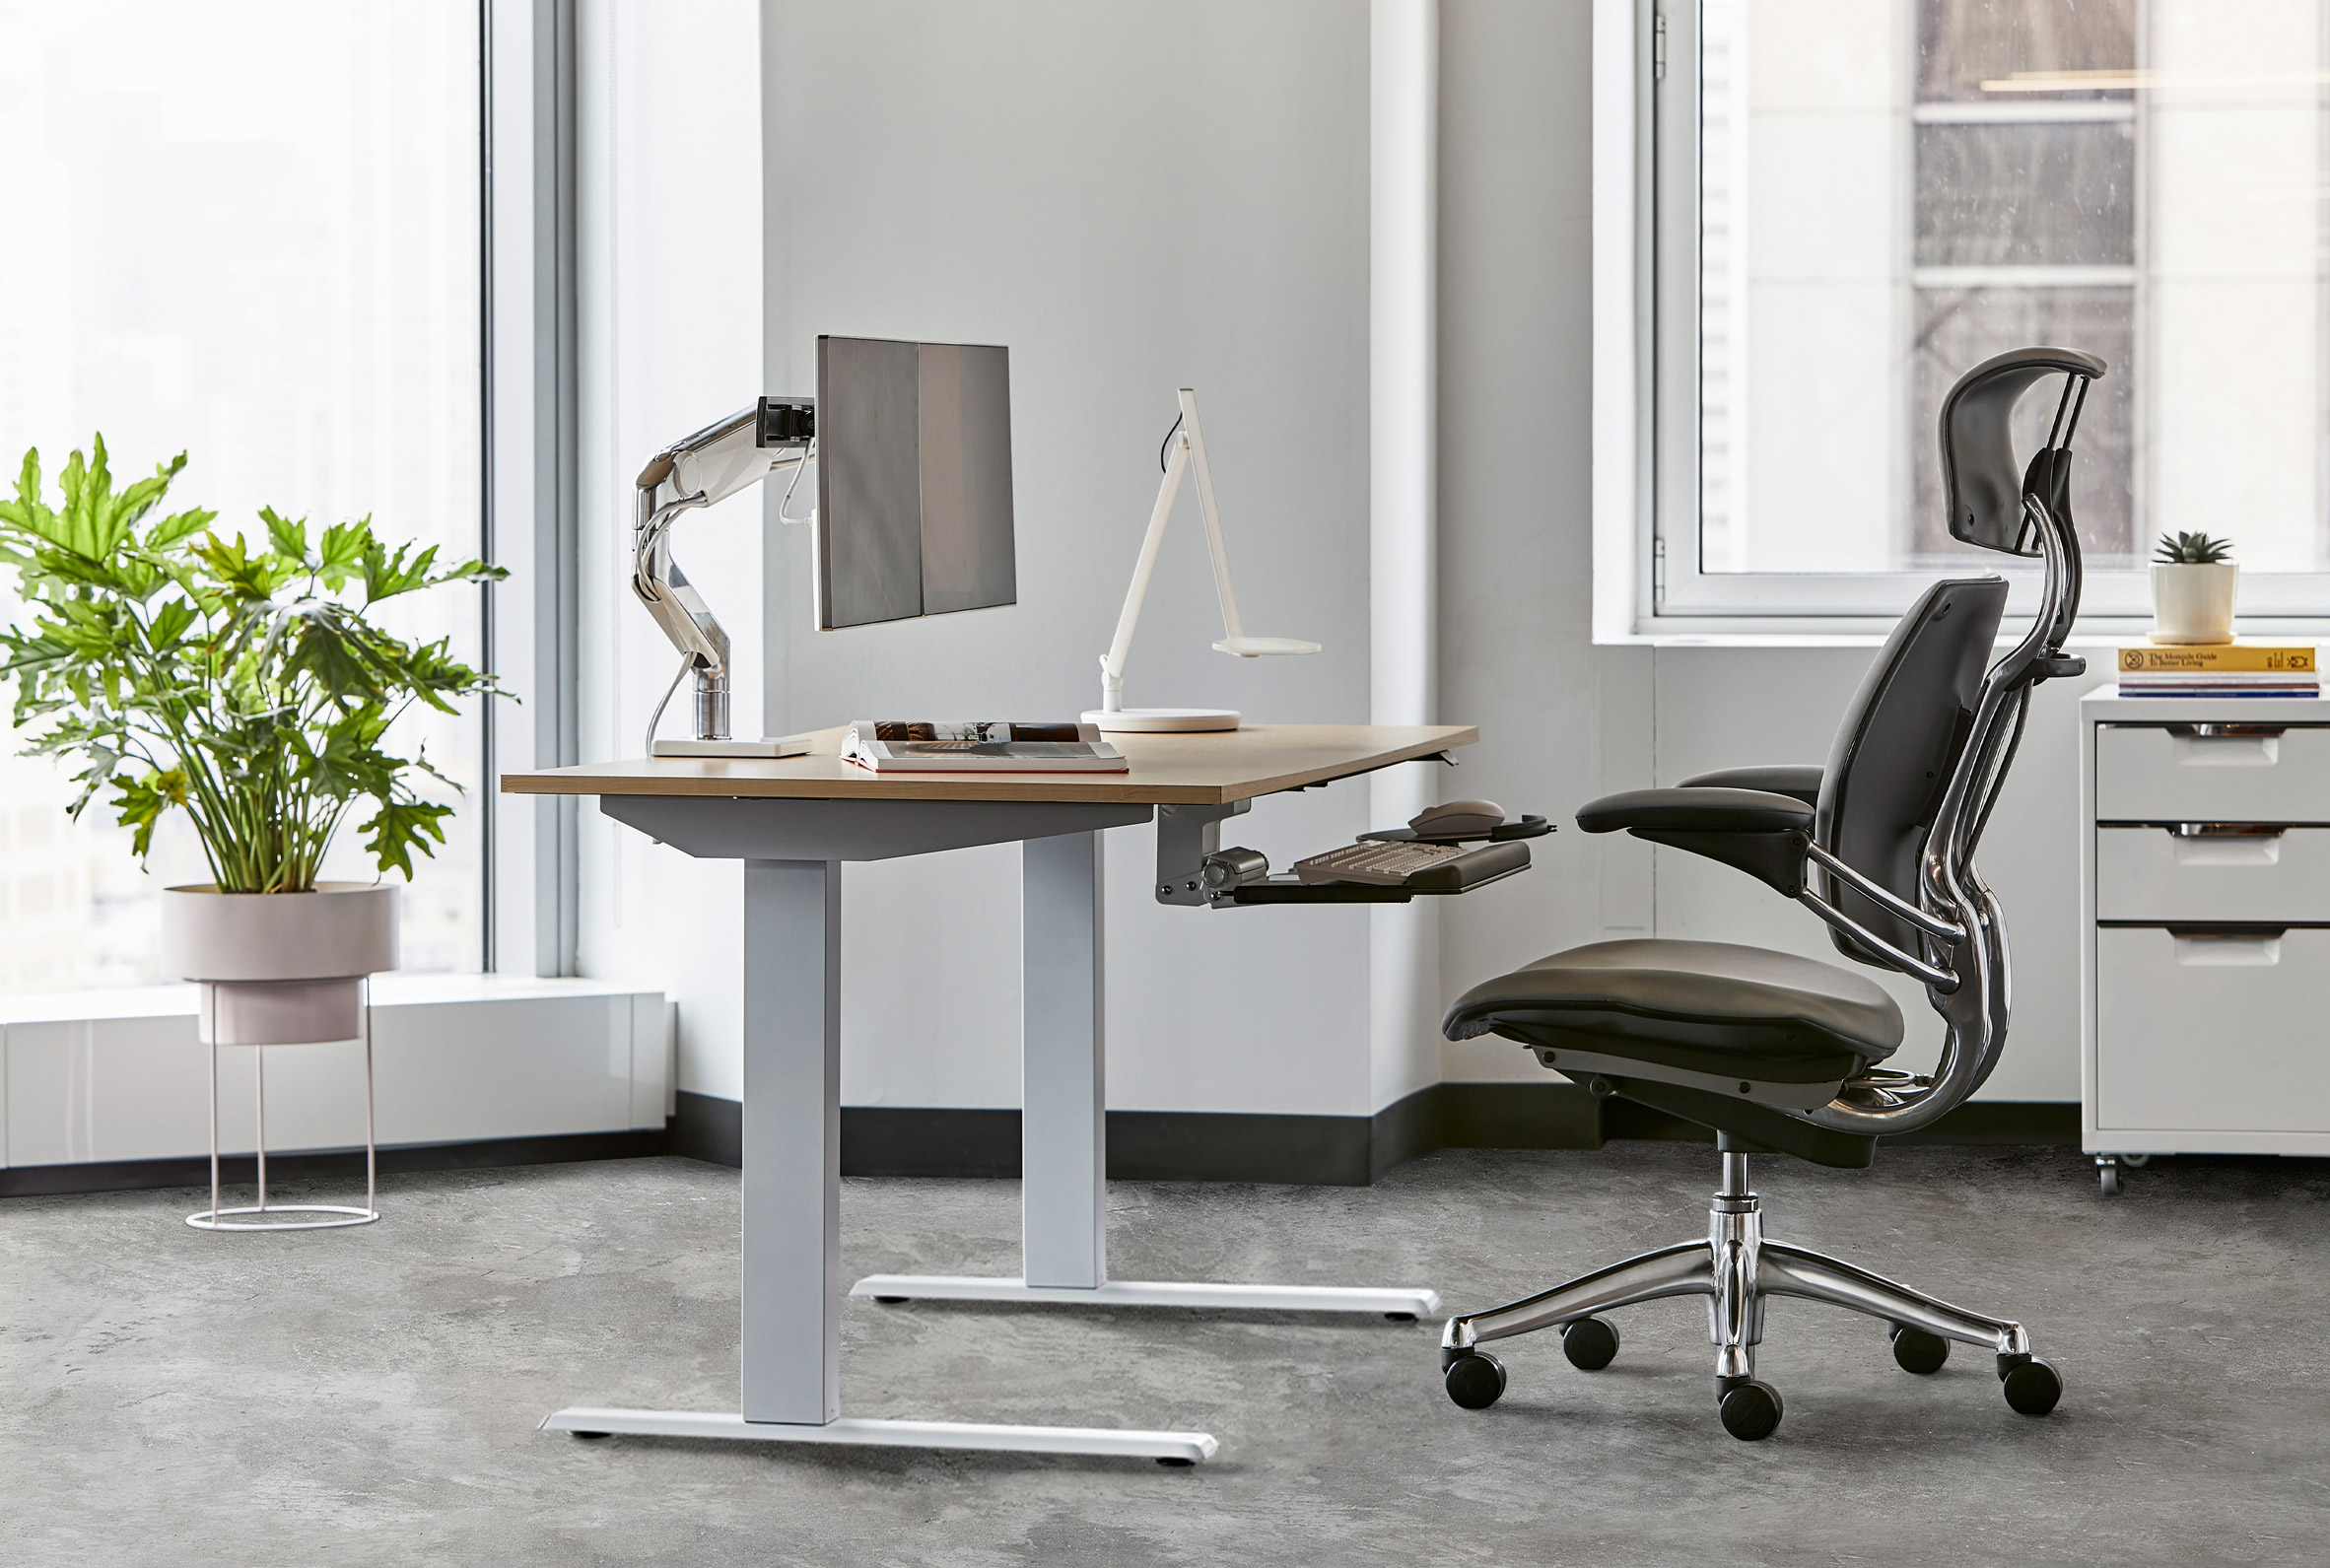 Float adjustable desk by Humanscale | Dezeen Showroom